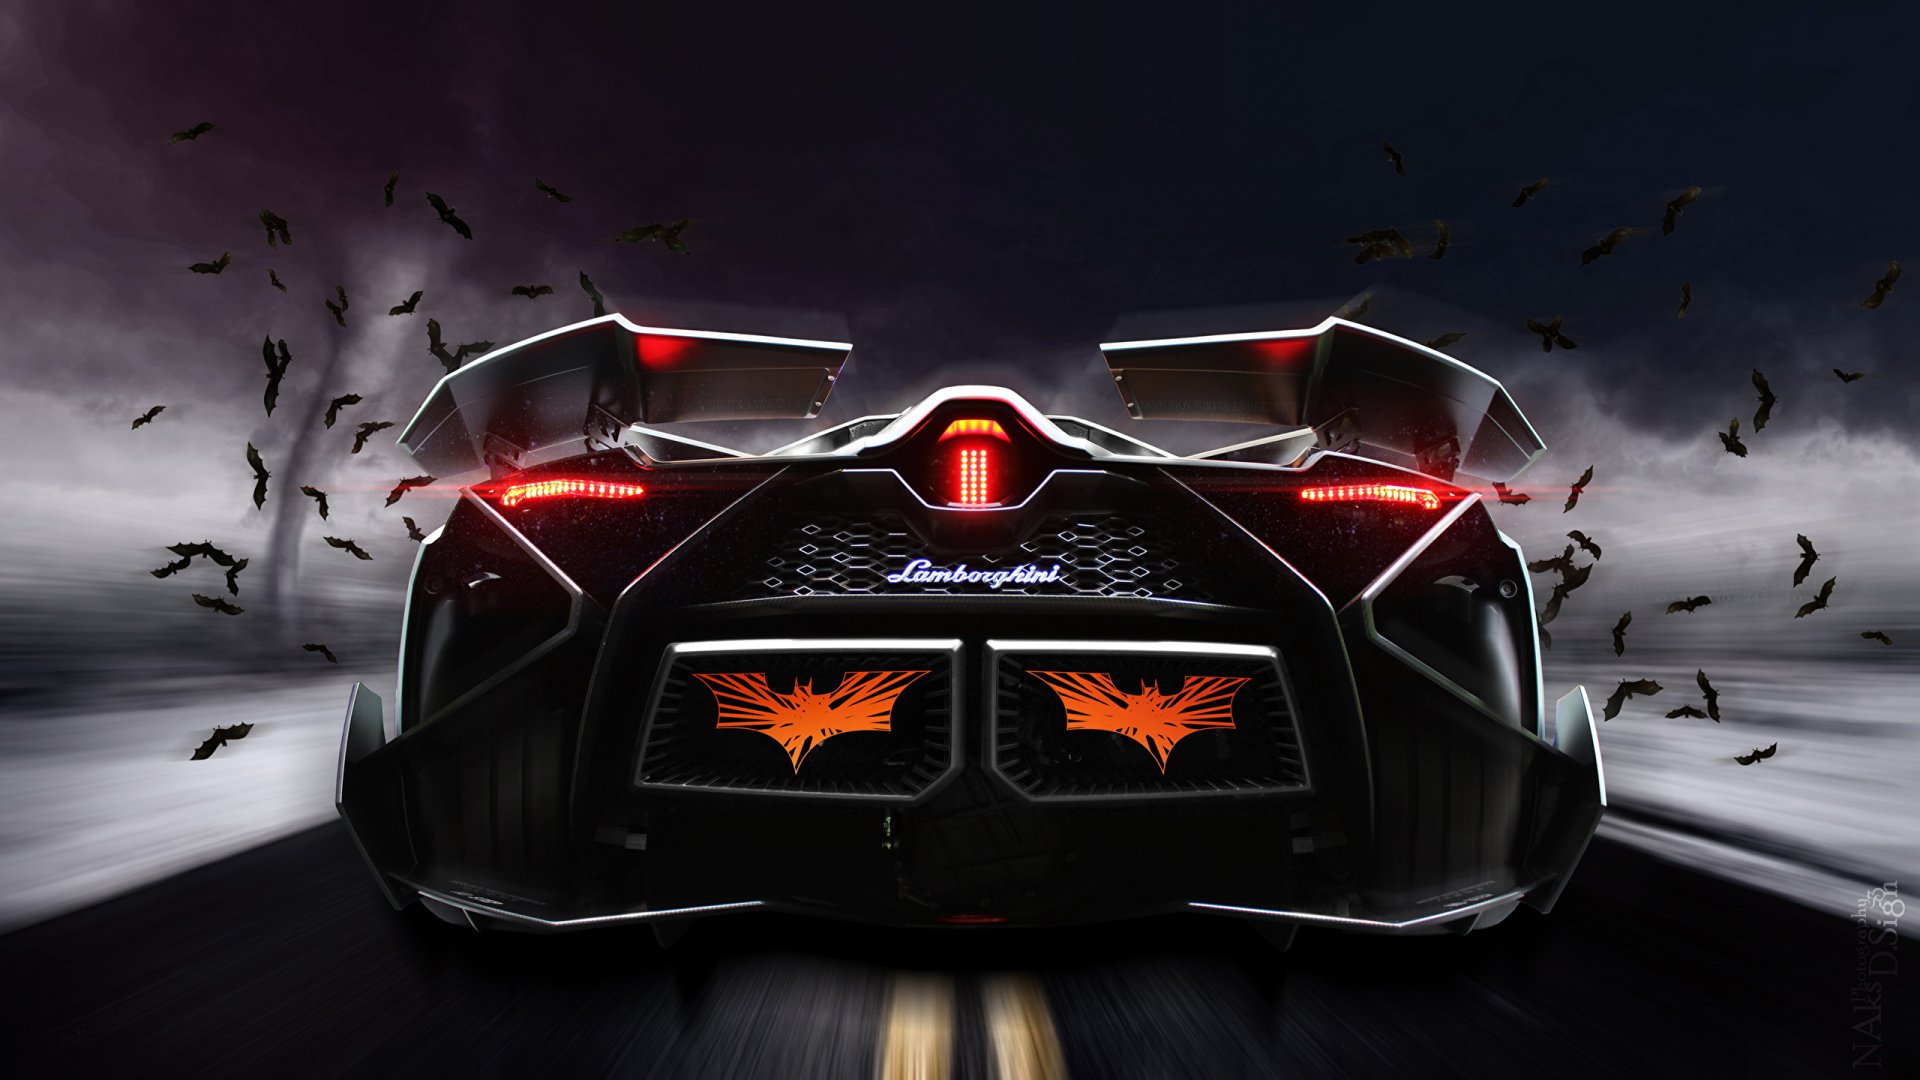 Lamborghini Egoista Backgrounds